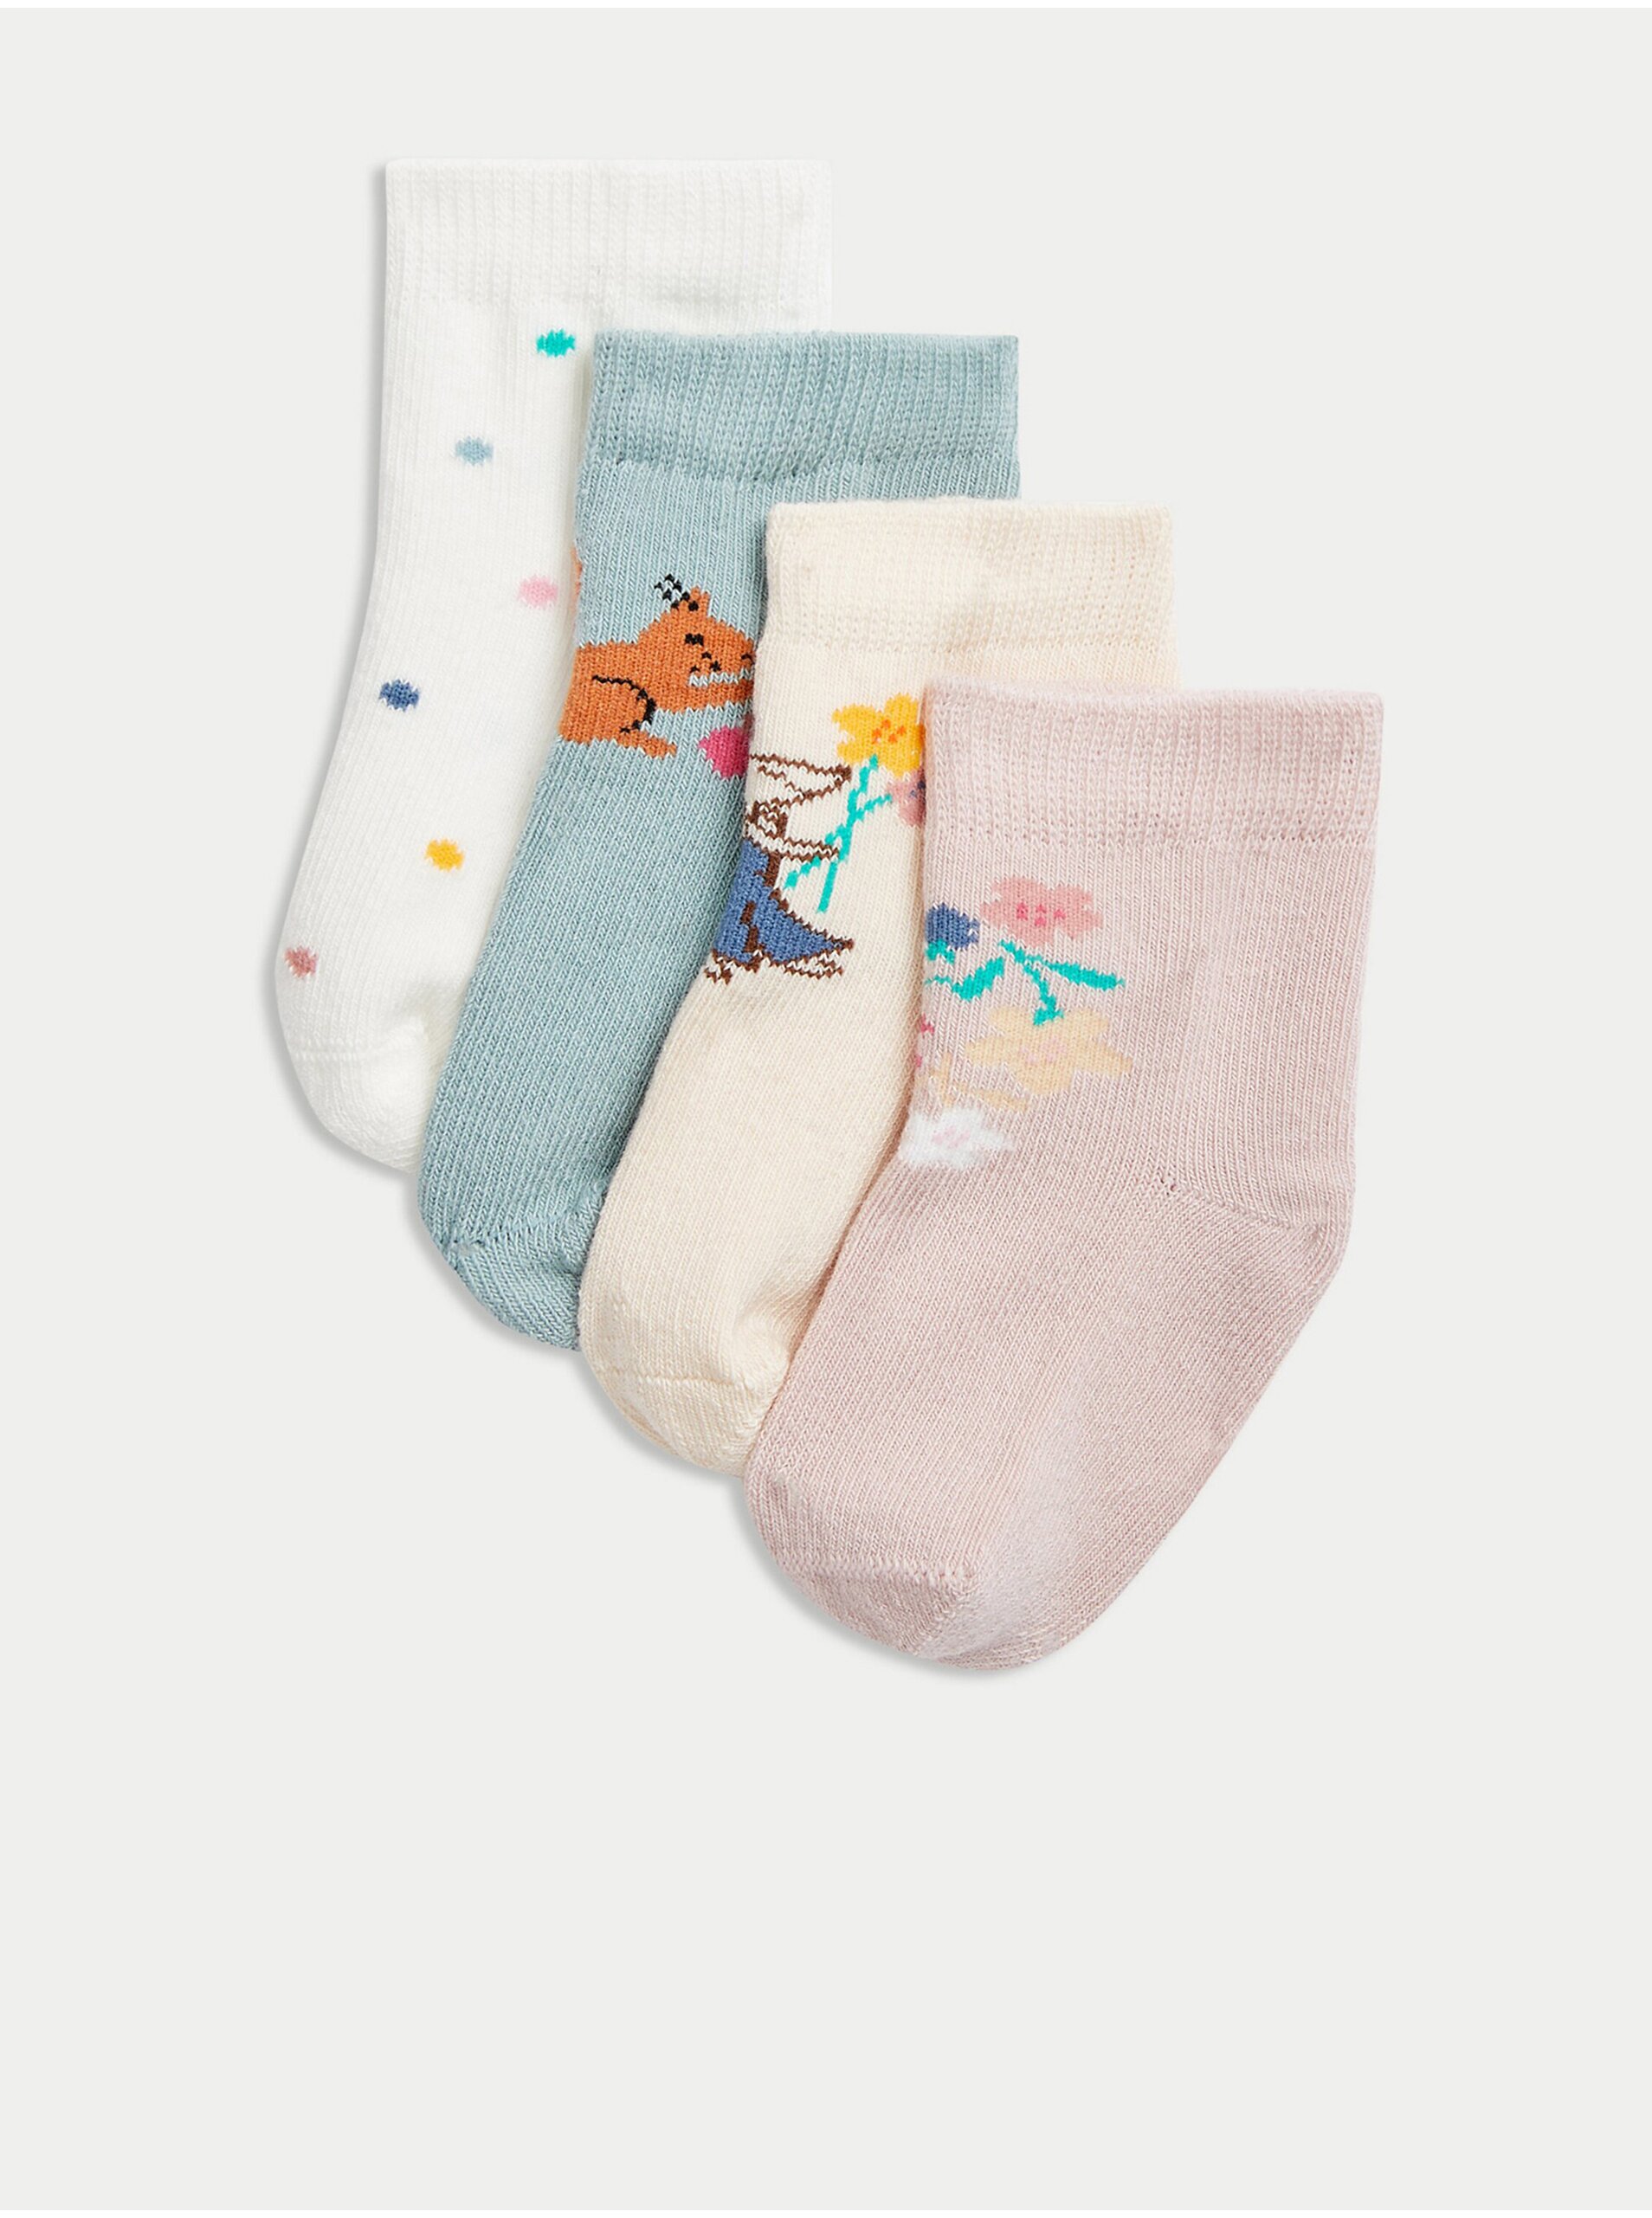 Lacno Súprava štyroch párov detských vzorovaných ponožiek v bielej, krémovej, ružovej a svetlo modrej farbe Marks & Spencer